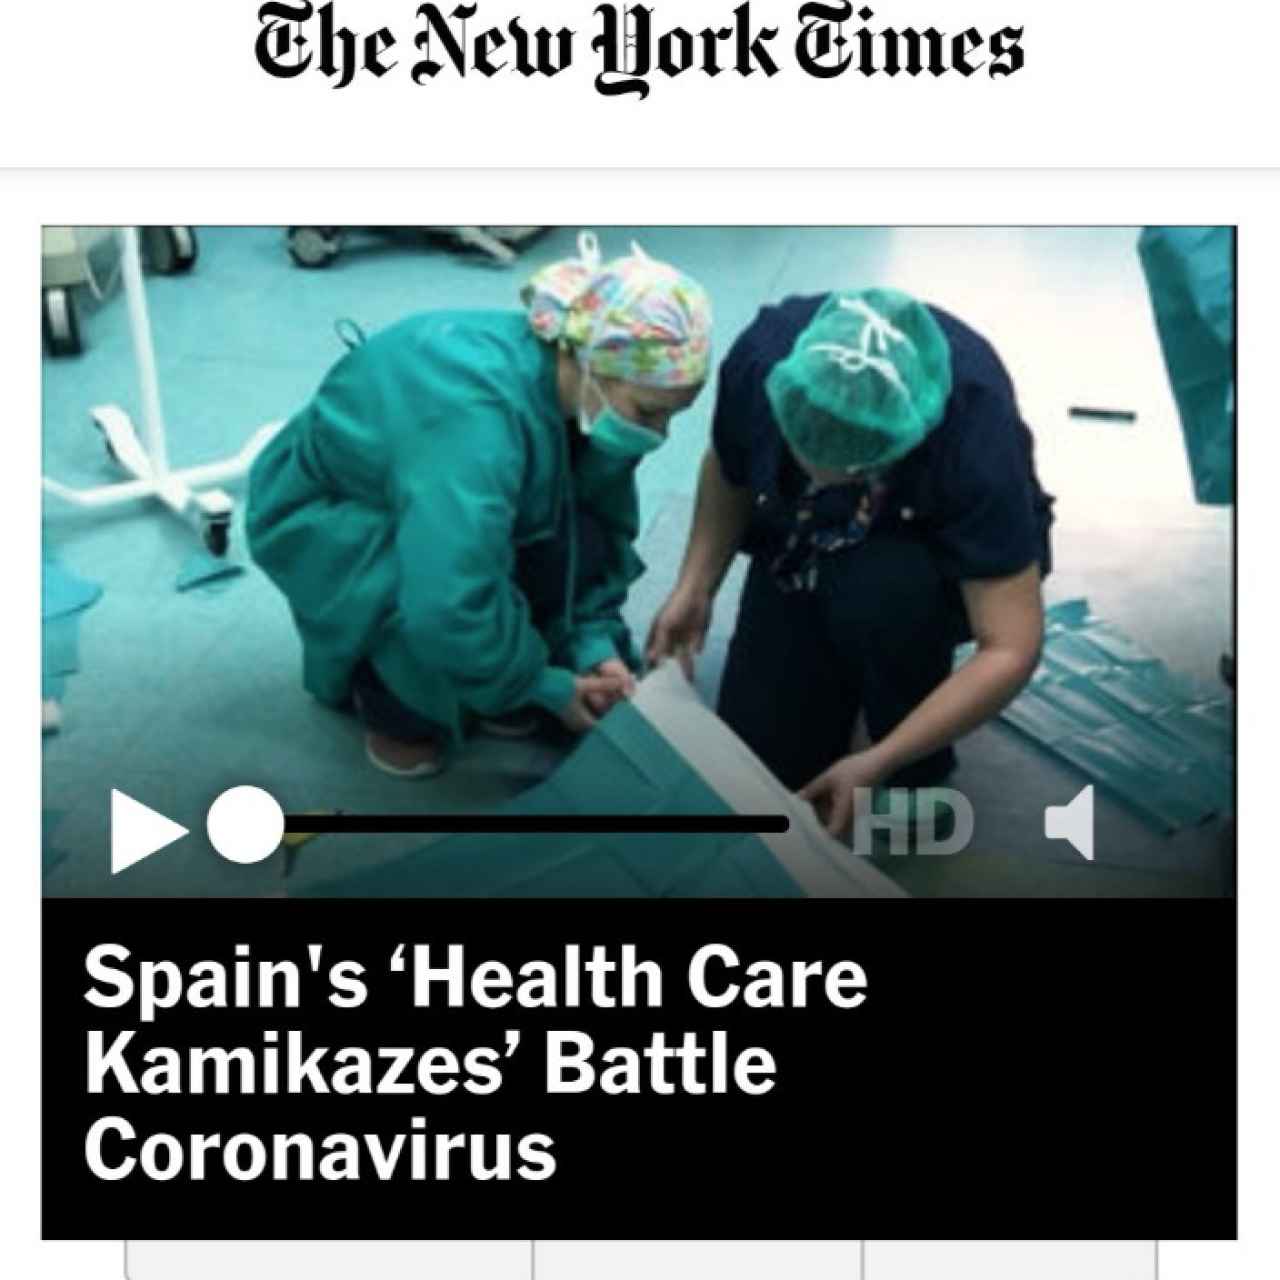 El 'New York Times' sobre la crisis del virus en España.